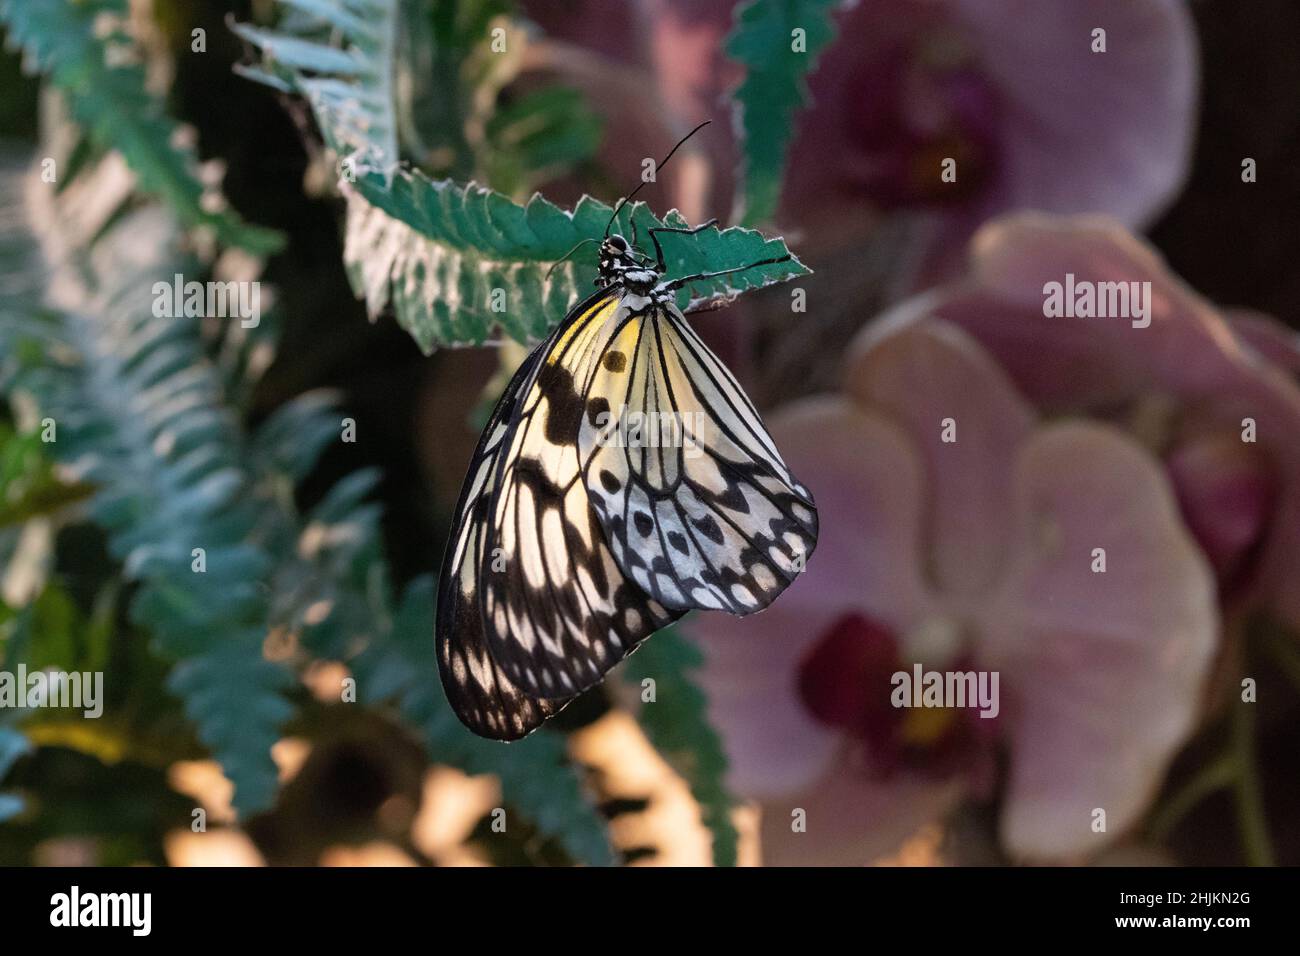 Nahaufnahme einer Weiße Baumnymphe in der Allgäuer Schmetterling Erlebniswelt, einem Schmetterlingspark mit Gewächshäusern voller bunter Insekten, ein Foto Stock